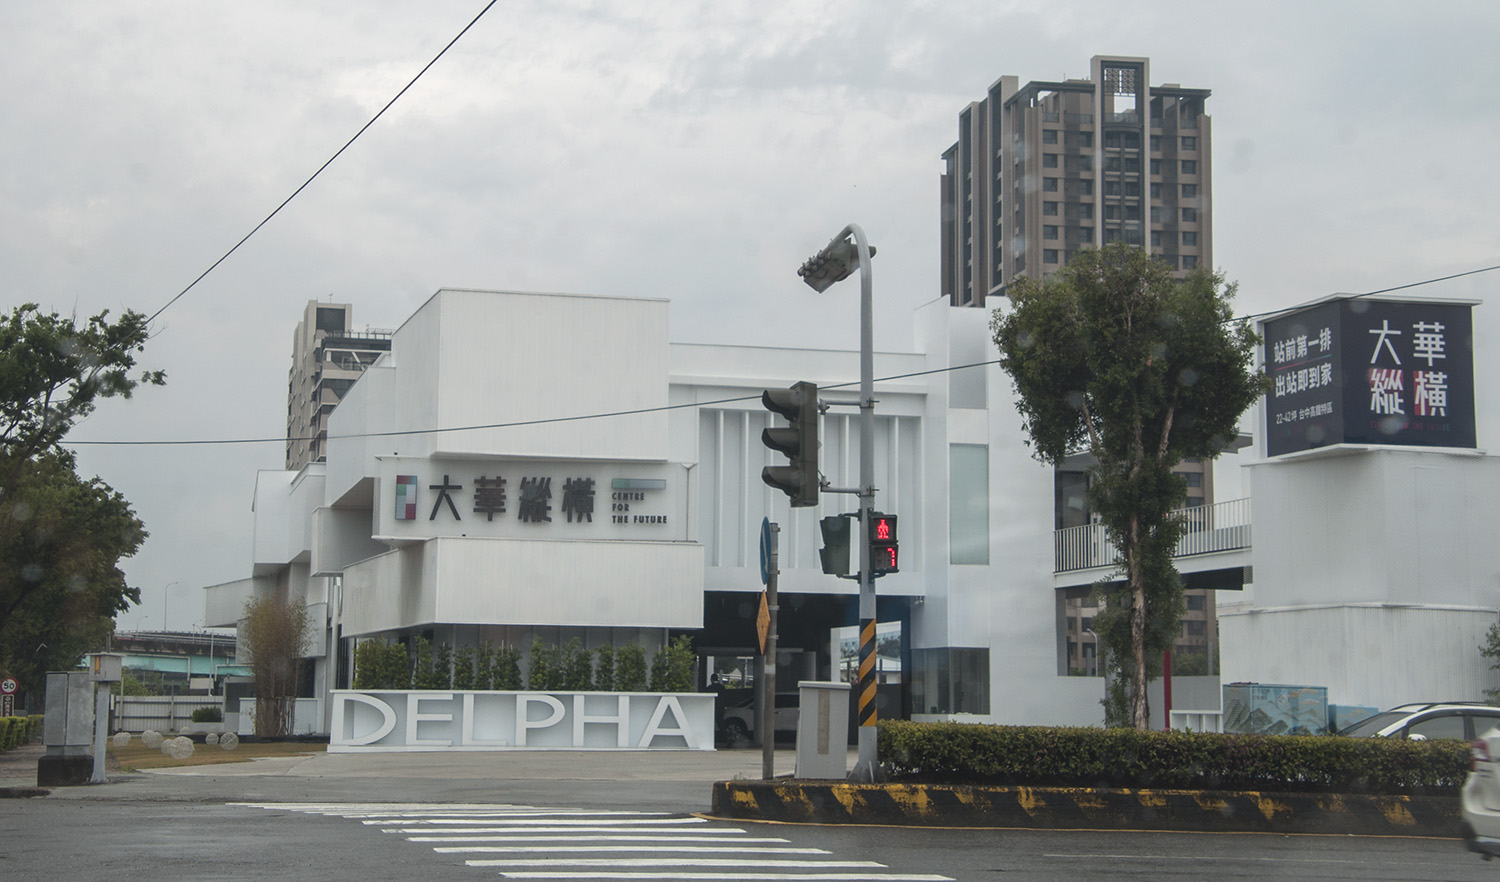 圖片:大華縱橫|烏日高鐵第一排 高鐵娛樂購物城 到站到家交通宅|建案搶先看